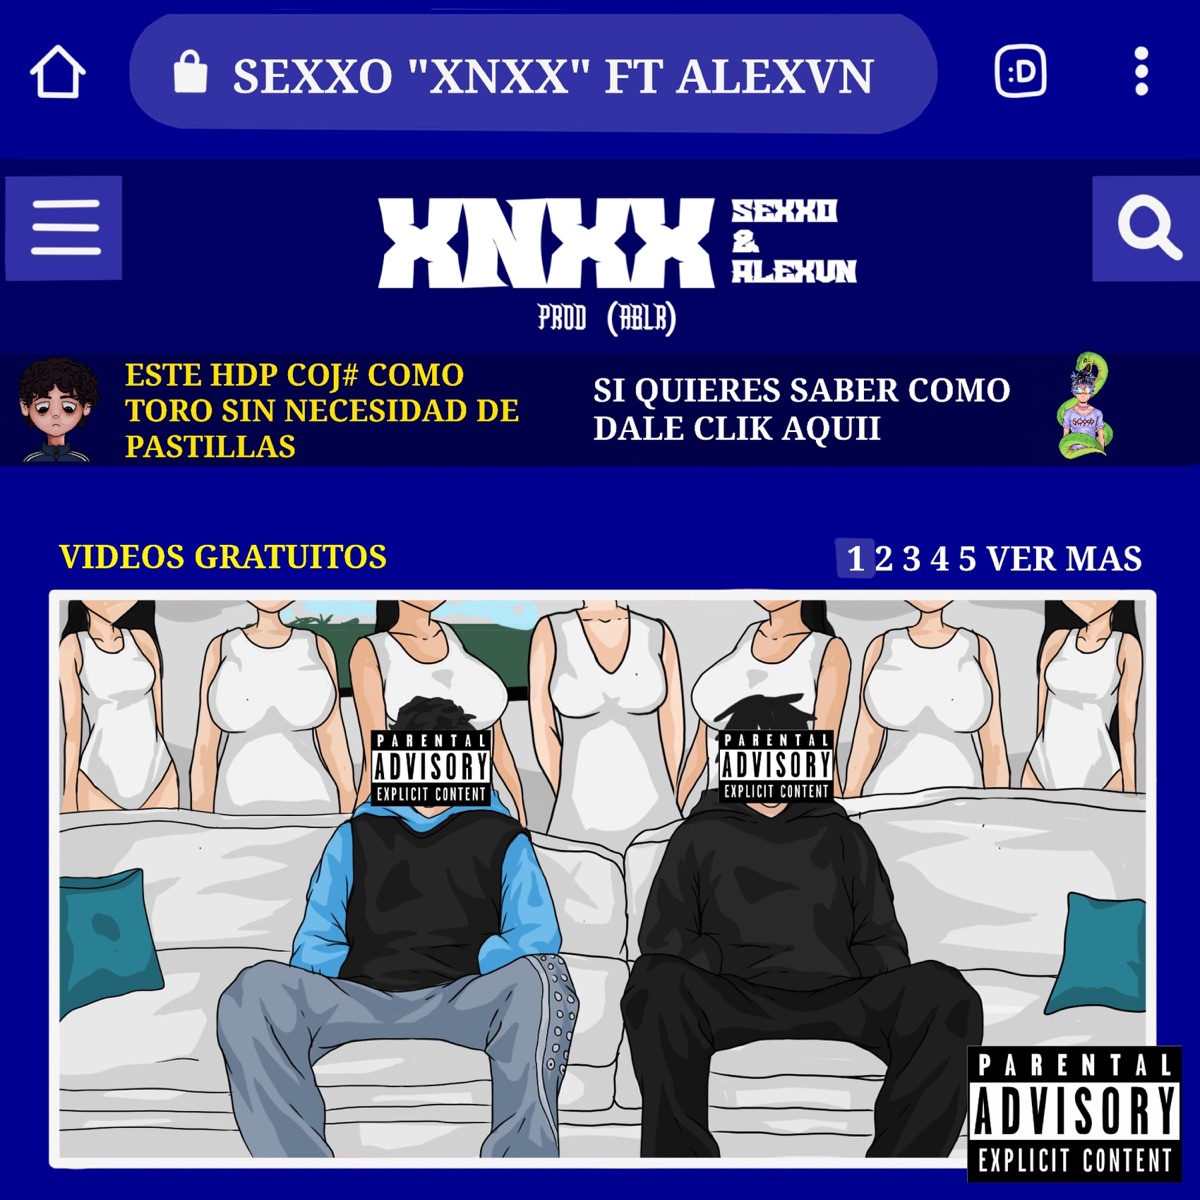 XNXX (feat. Alexvn) - Single - Album by Sexxo - Apple Music